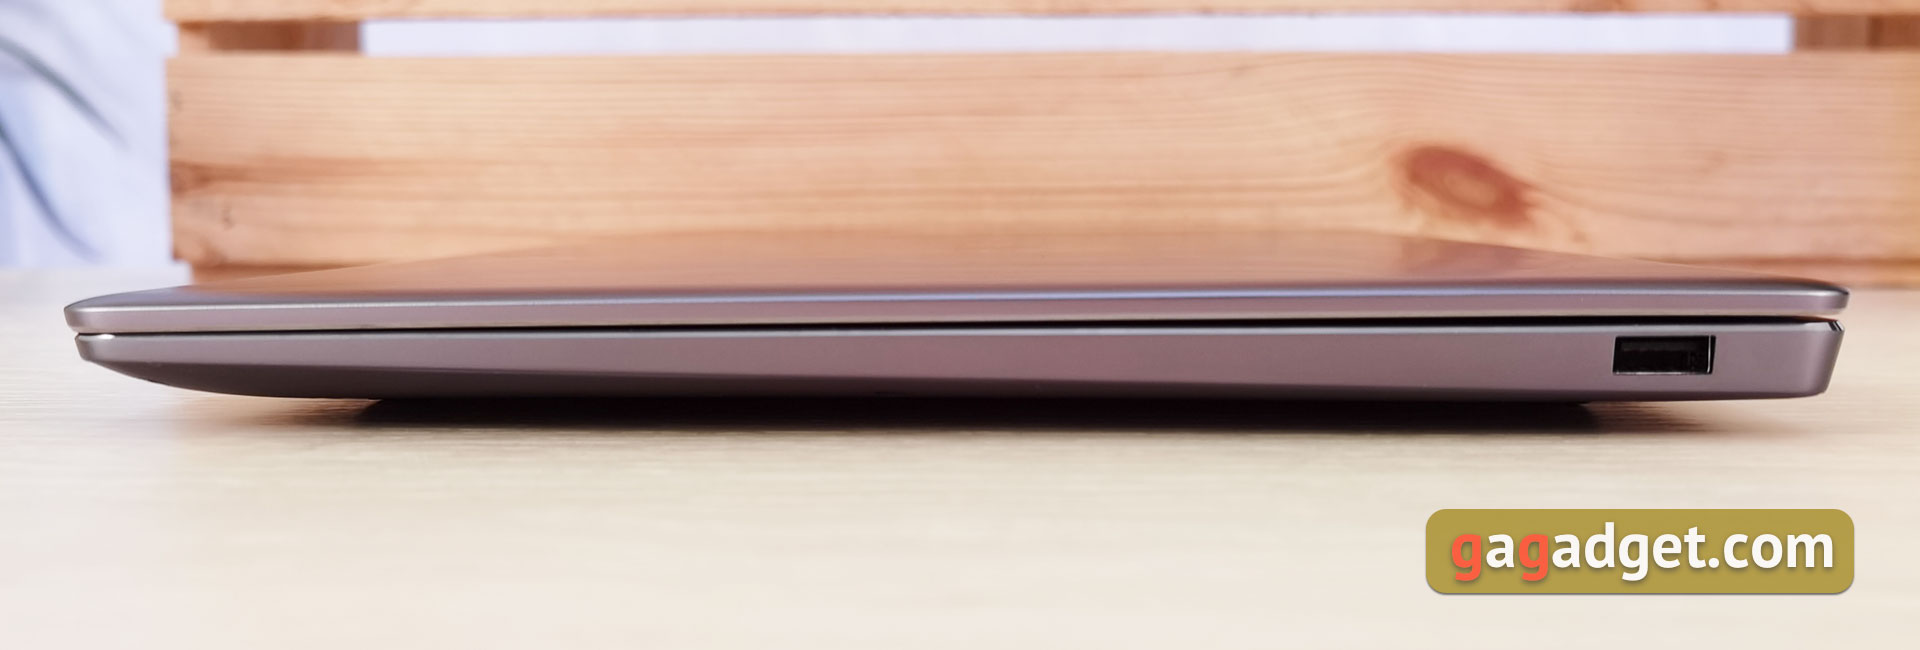 Test Huawei MateBook 14s: Huawei-Laptop mit Google-Diensten und schnellem Bildschirm-6